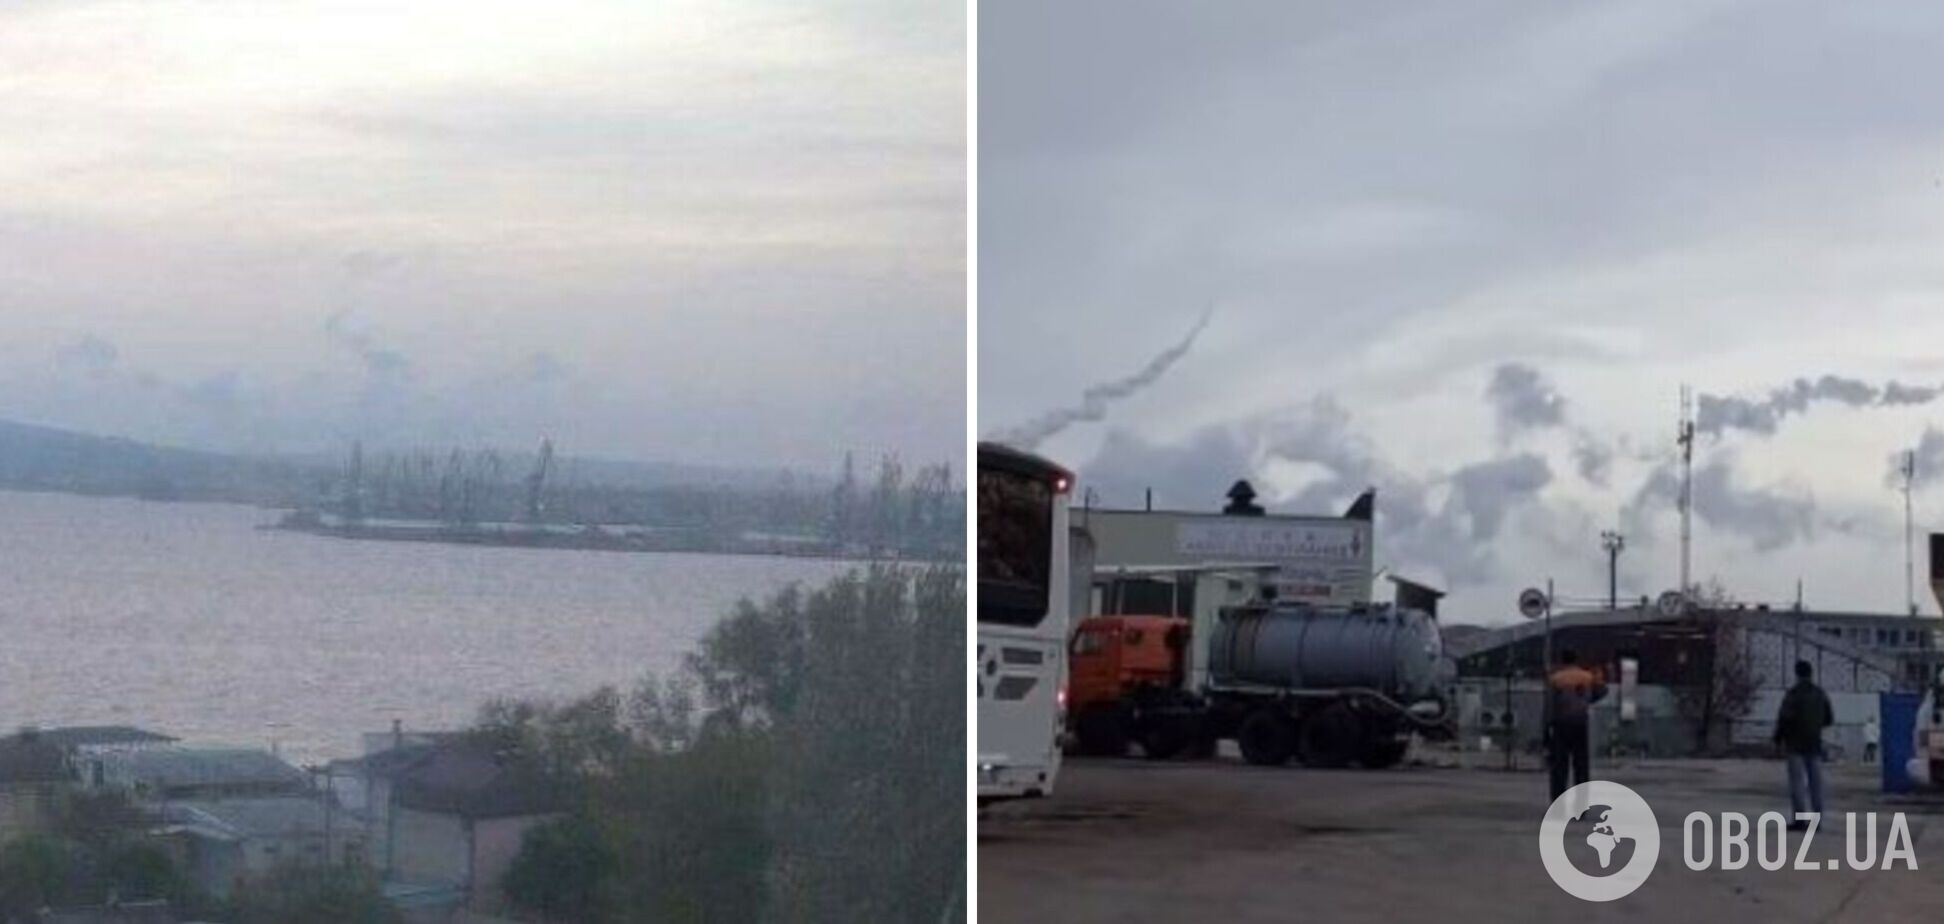 Украина атаковала военные объекты РФ в Керчи: попала в судостроительный завод 'Залив' и ракетный катер проекта 'Каракурт'. Фото и видео